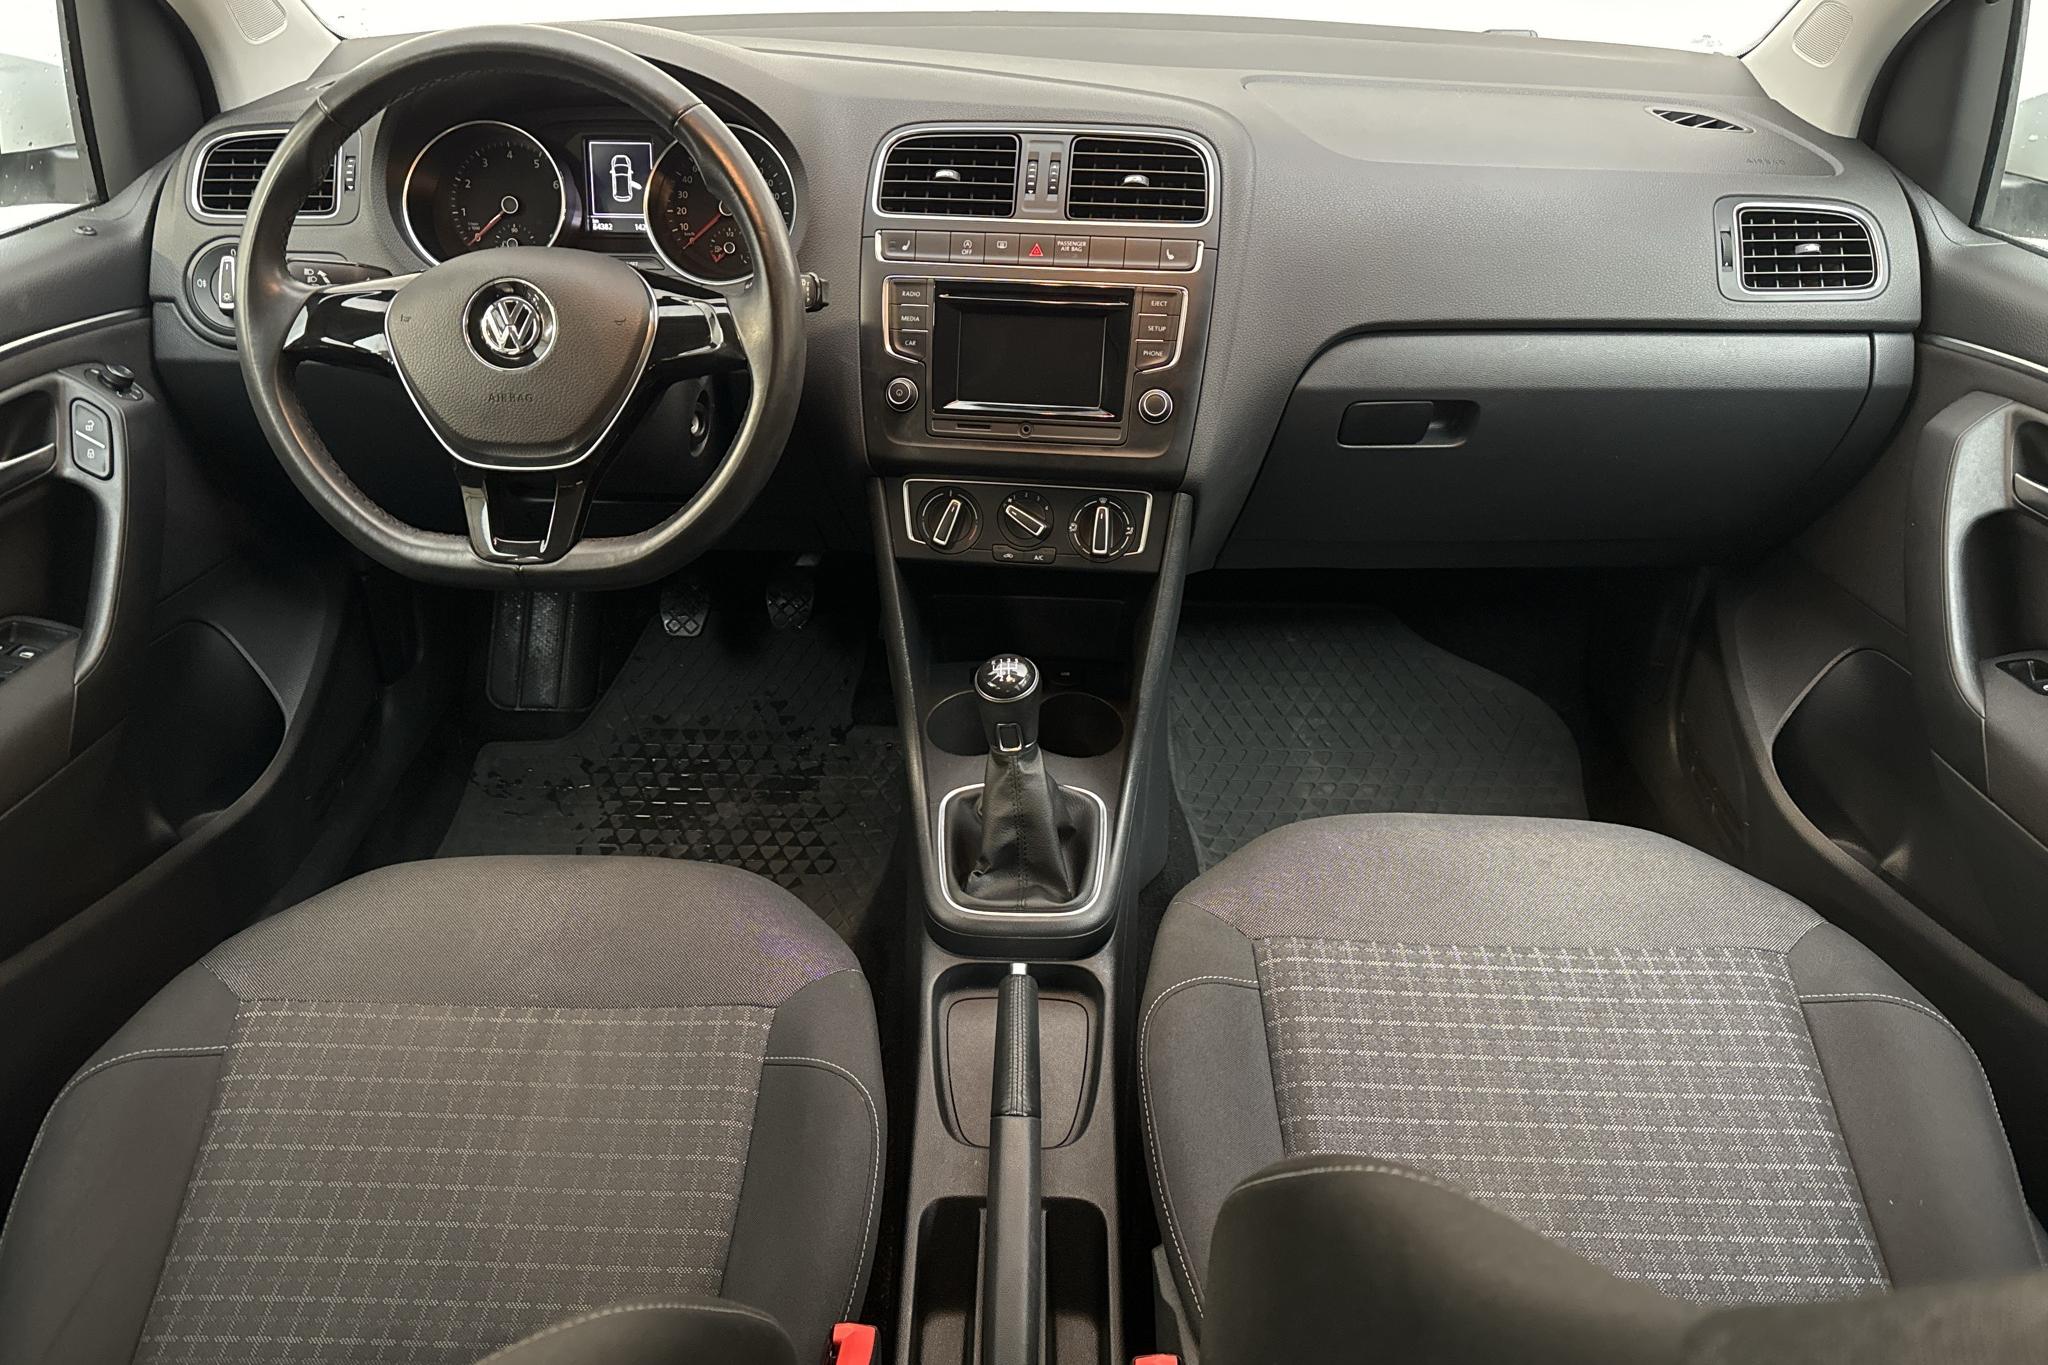 VW Polo 1.2 TSI 5dr (90hk) - 84 380 km - Käsitsi - valge - 2016